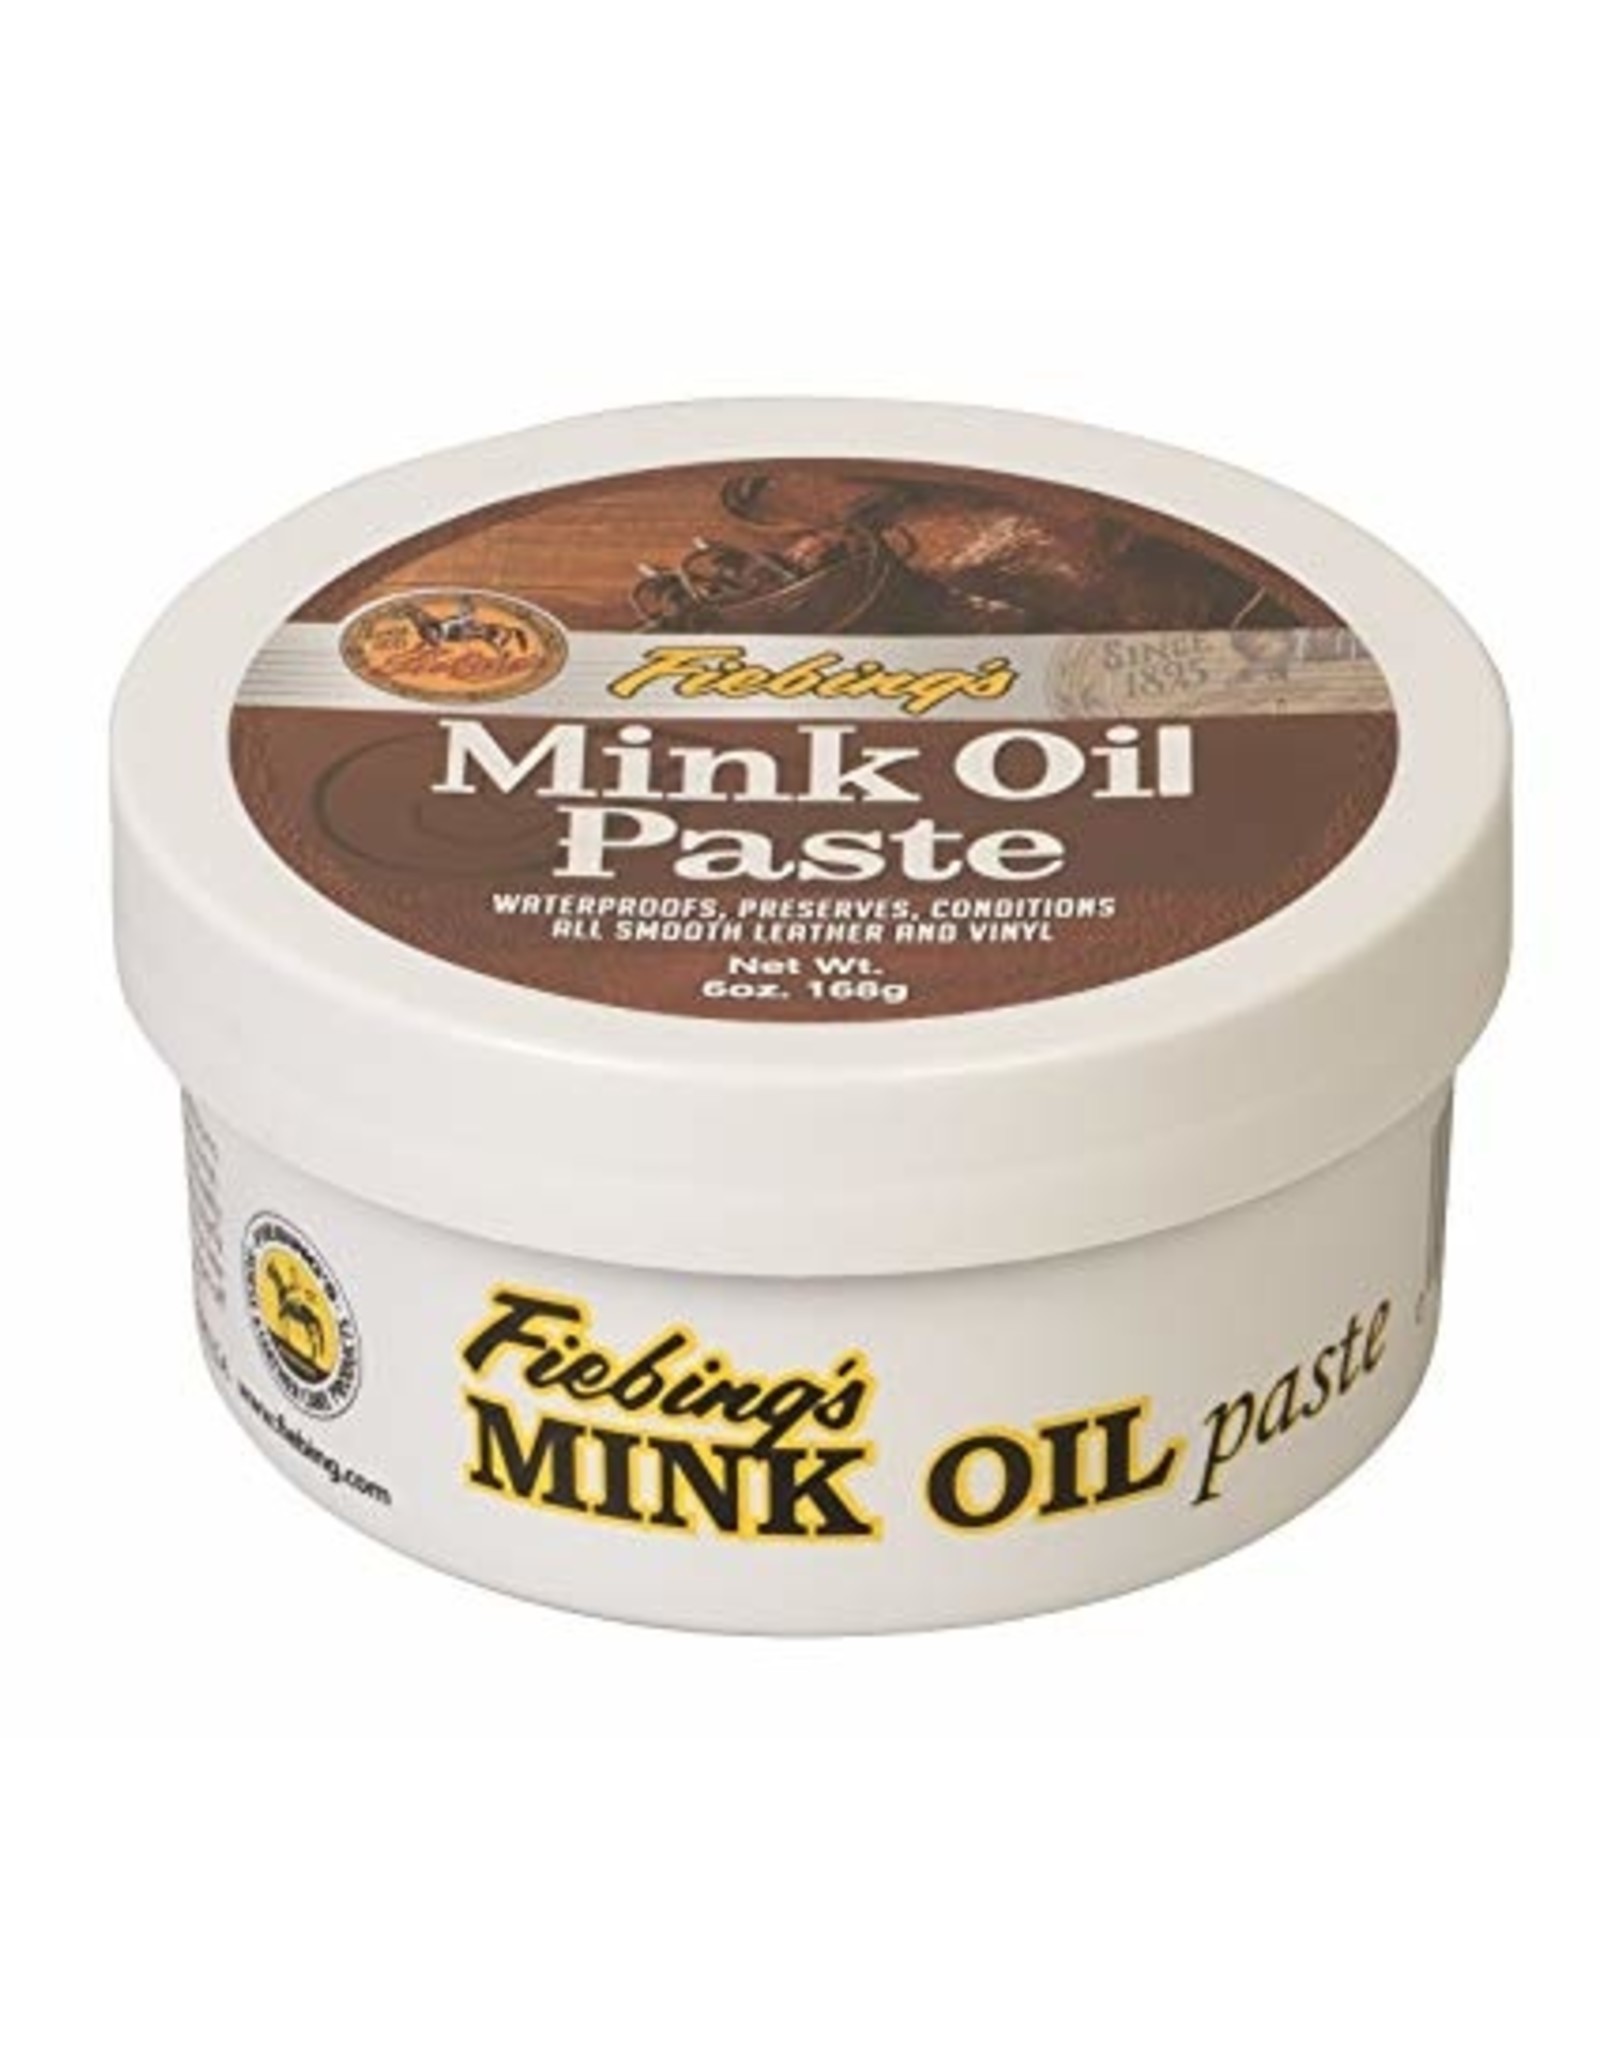 Fiebing's Mink Oil